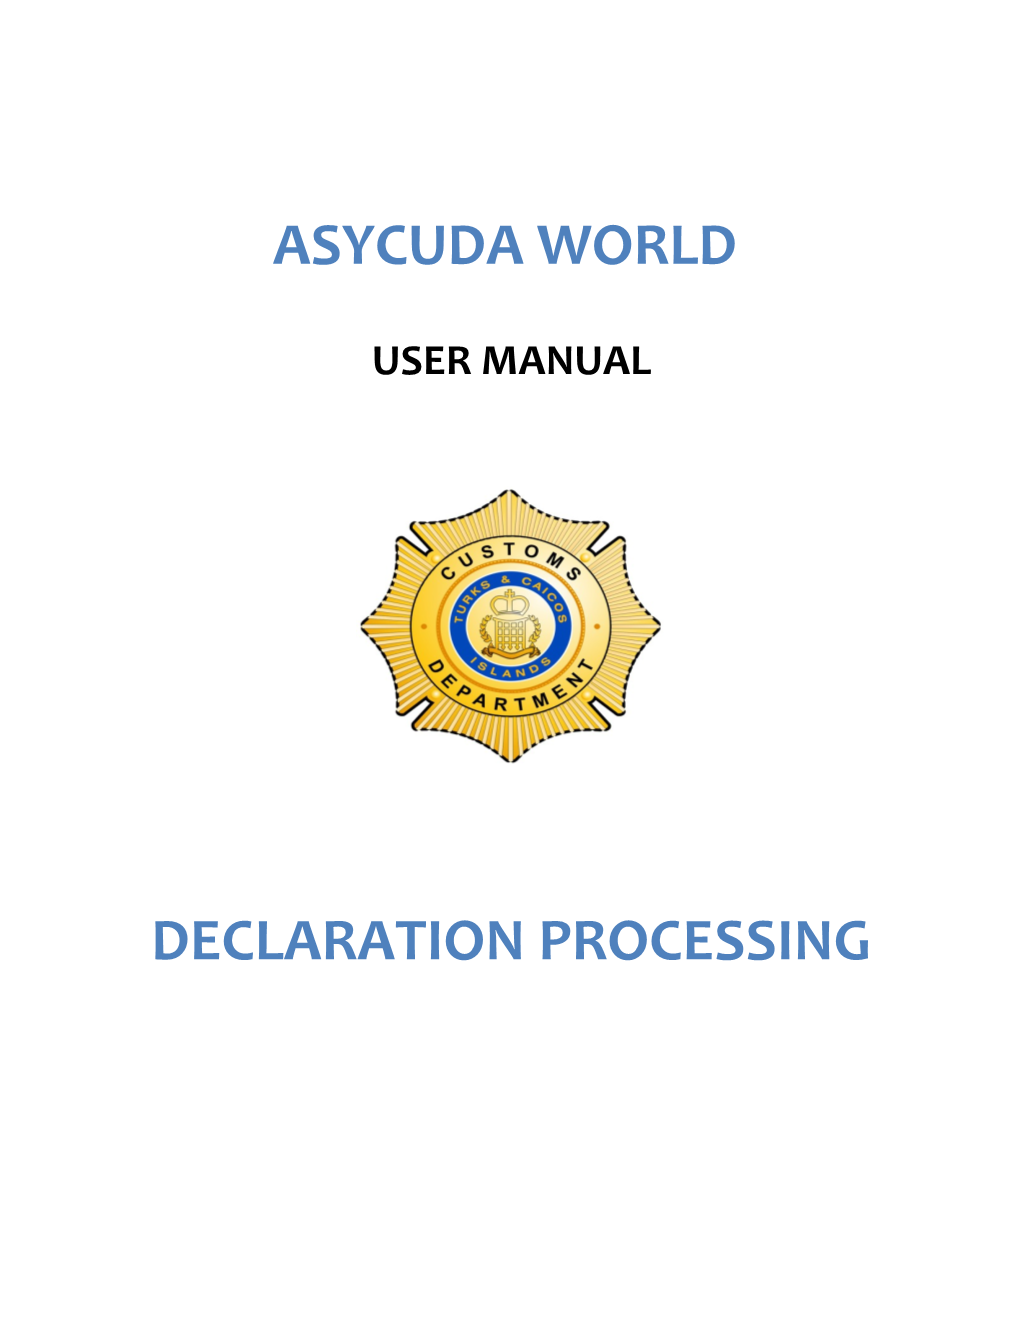 Asycuda Declaration Manual- Brokers